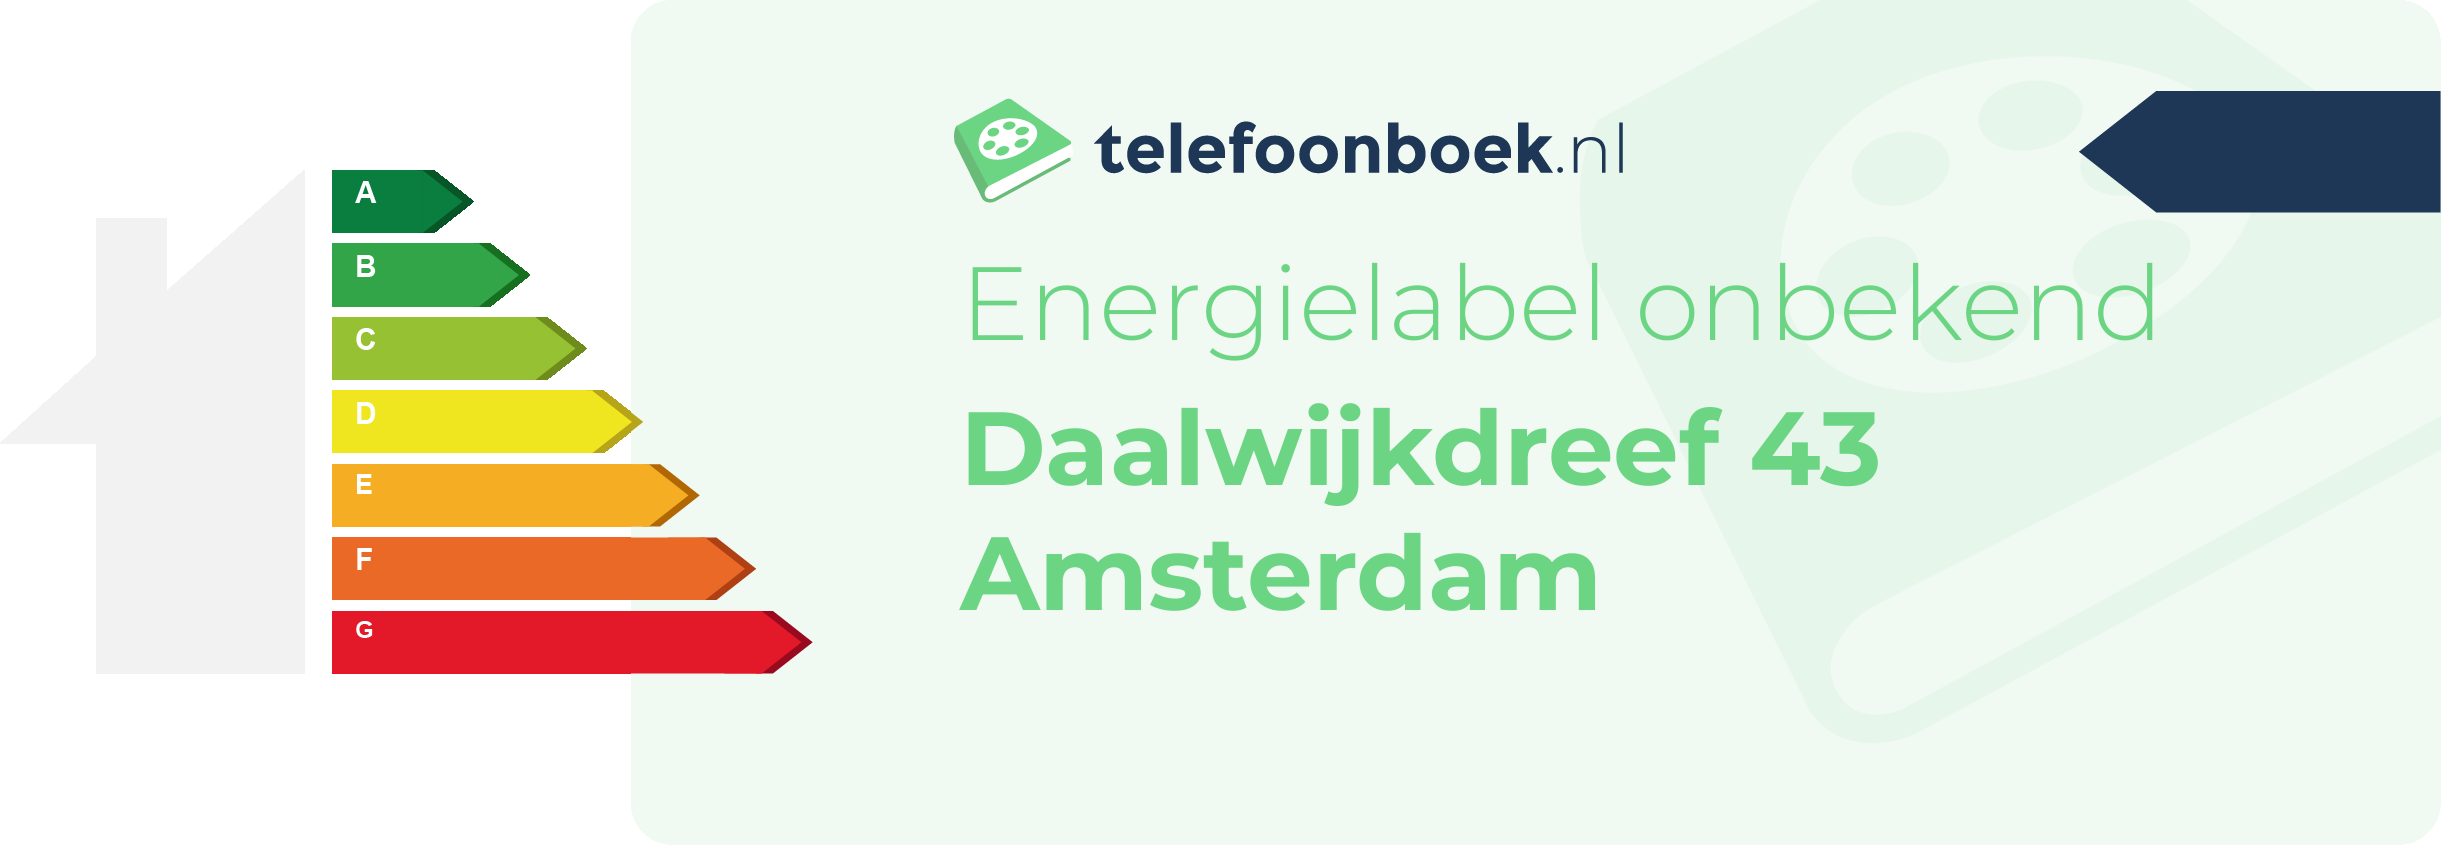 Energielabel Daalwijkdreef 43 Amsterdam